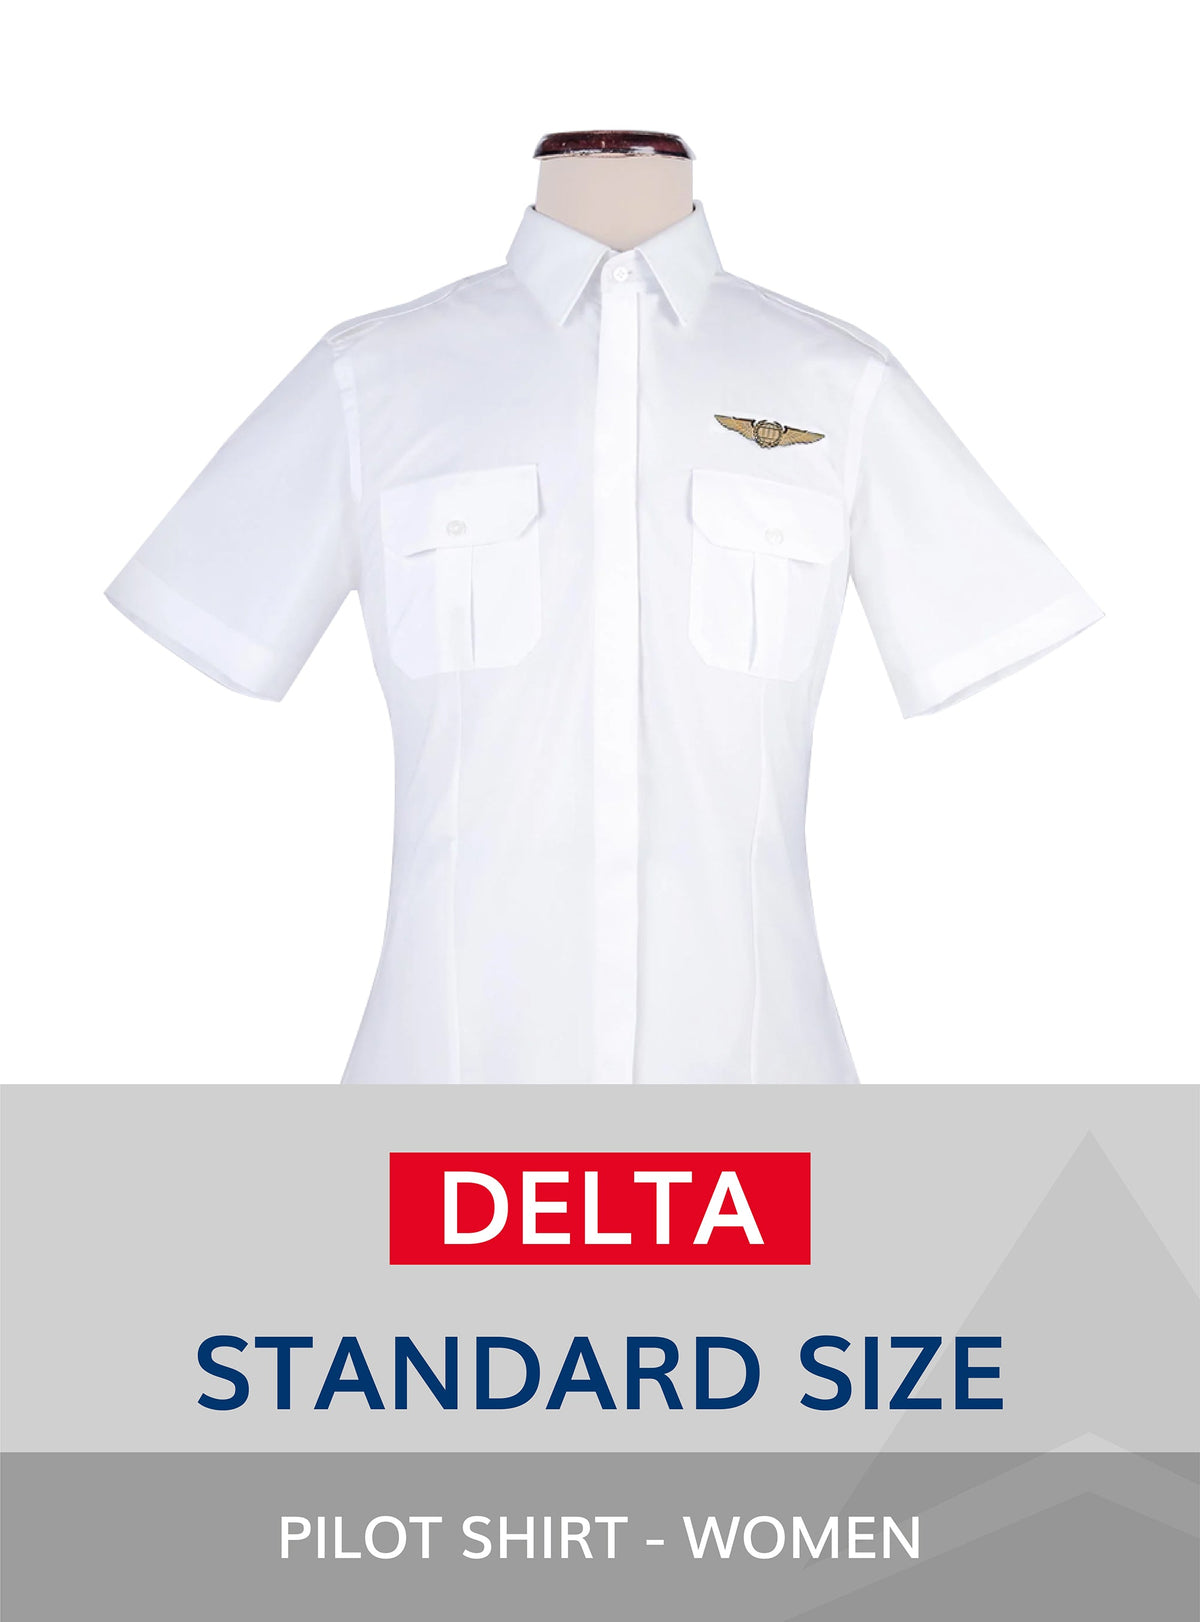 Delta Standard Size Pilot Shirt for women